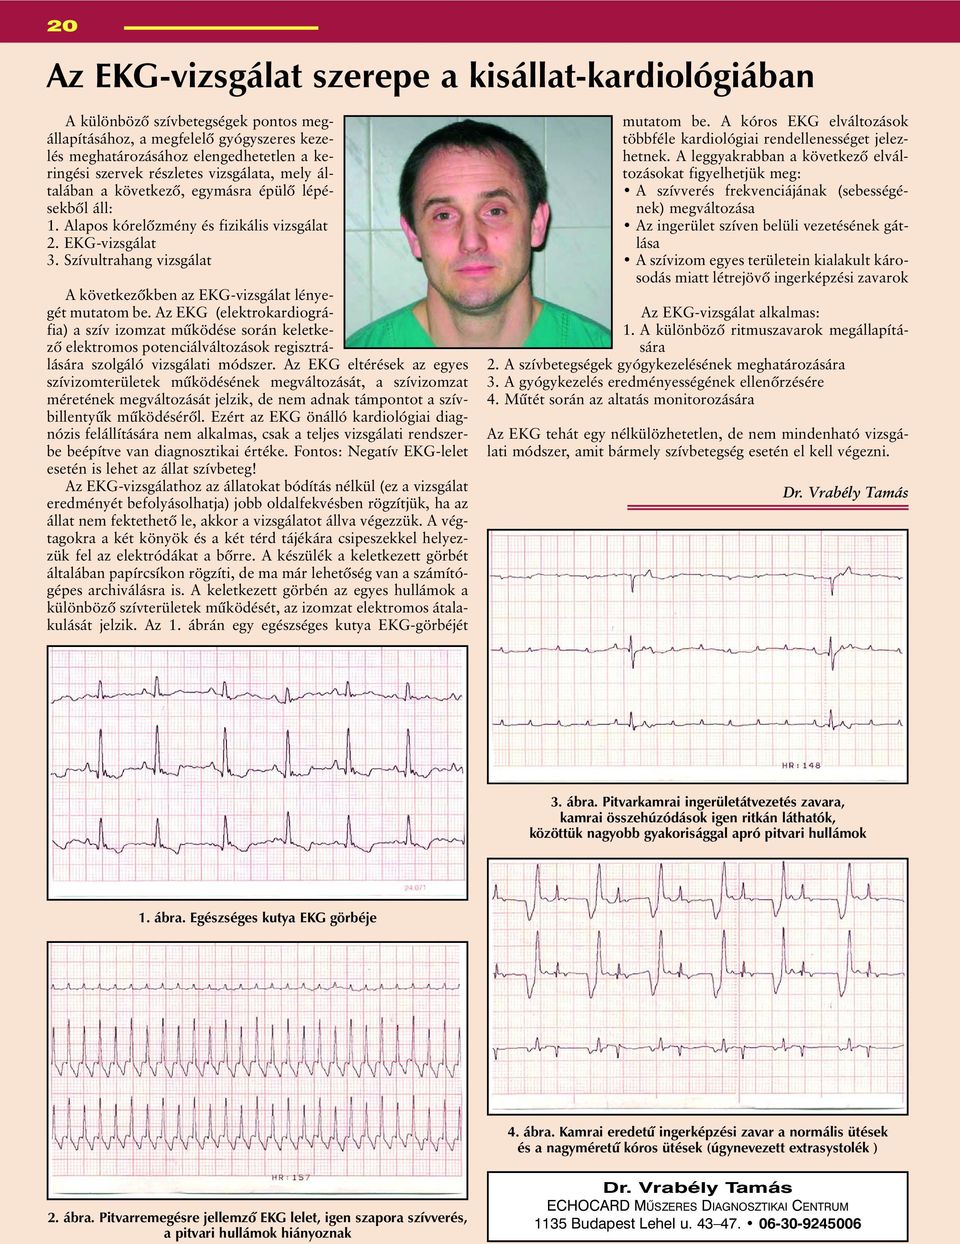 Szívultrahang vizsgálat A következõkben az EKG-vizsgálat lényegét mutatom be.